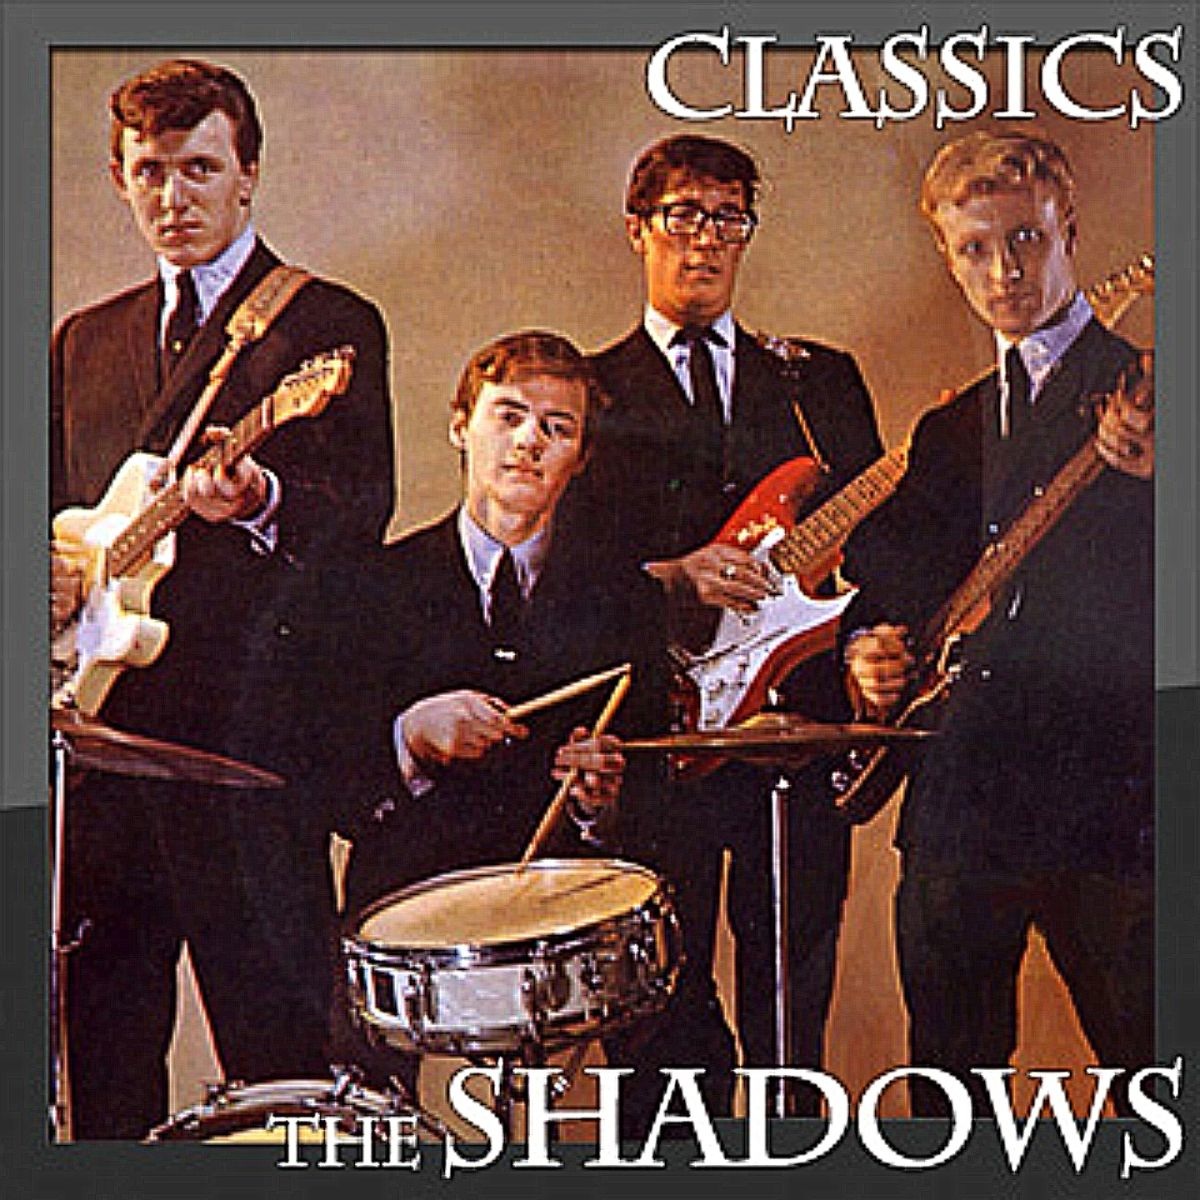 Обложка shadow. Shadow. The Shadows Band. The Shadows обложки альбомов. Shadow фото.